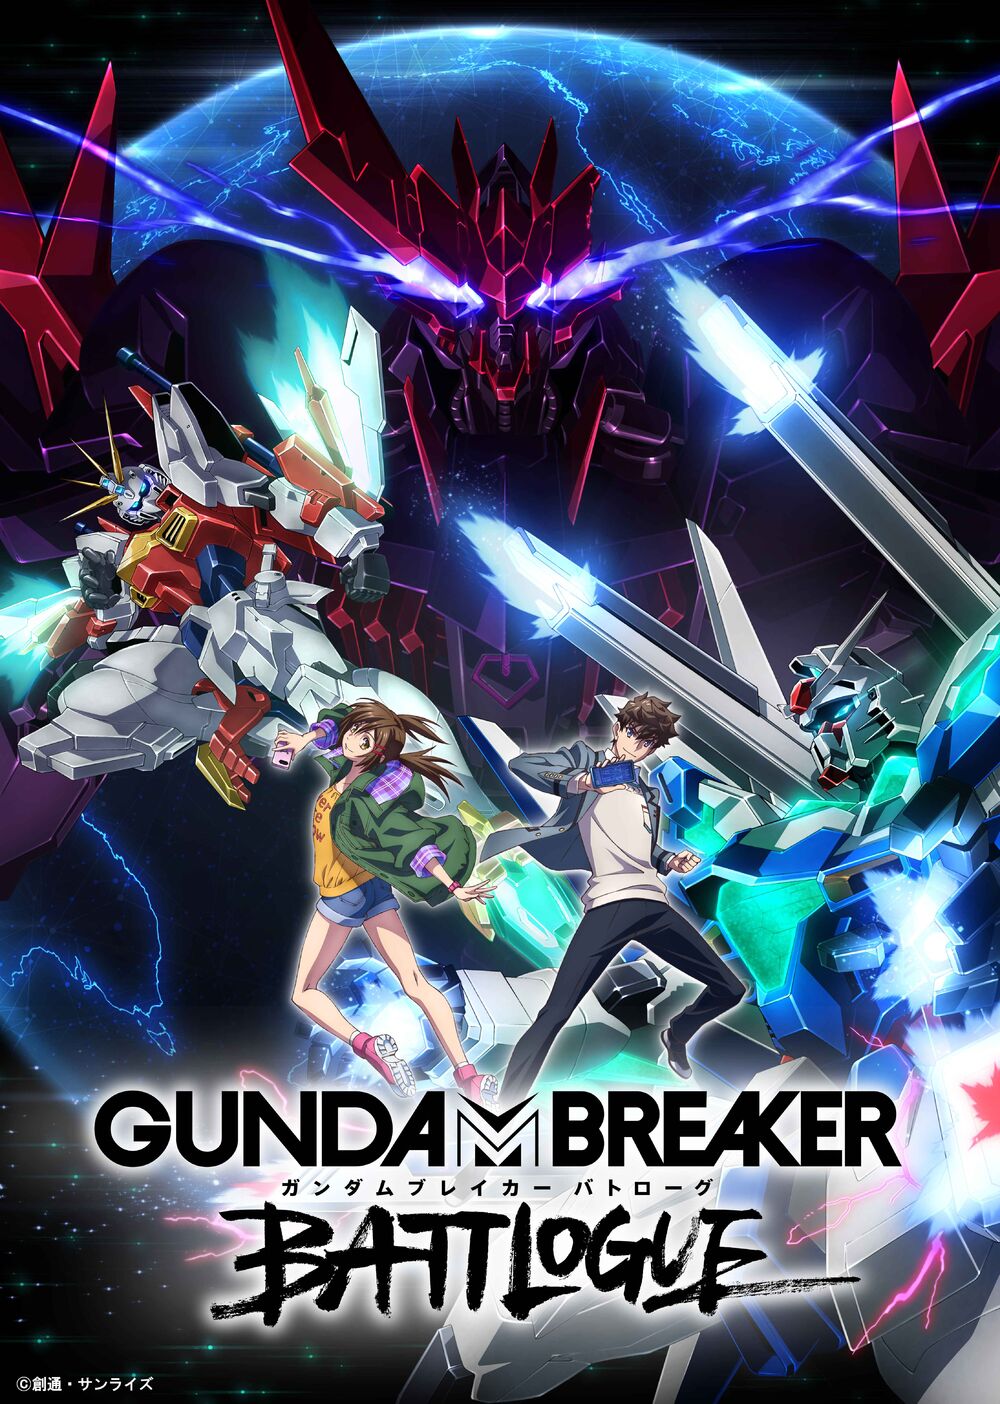 Gundam Breaker: Battlogue - Gundam Breaker Battlogue